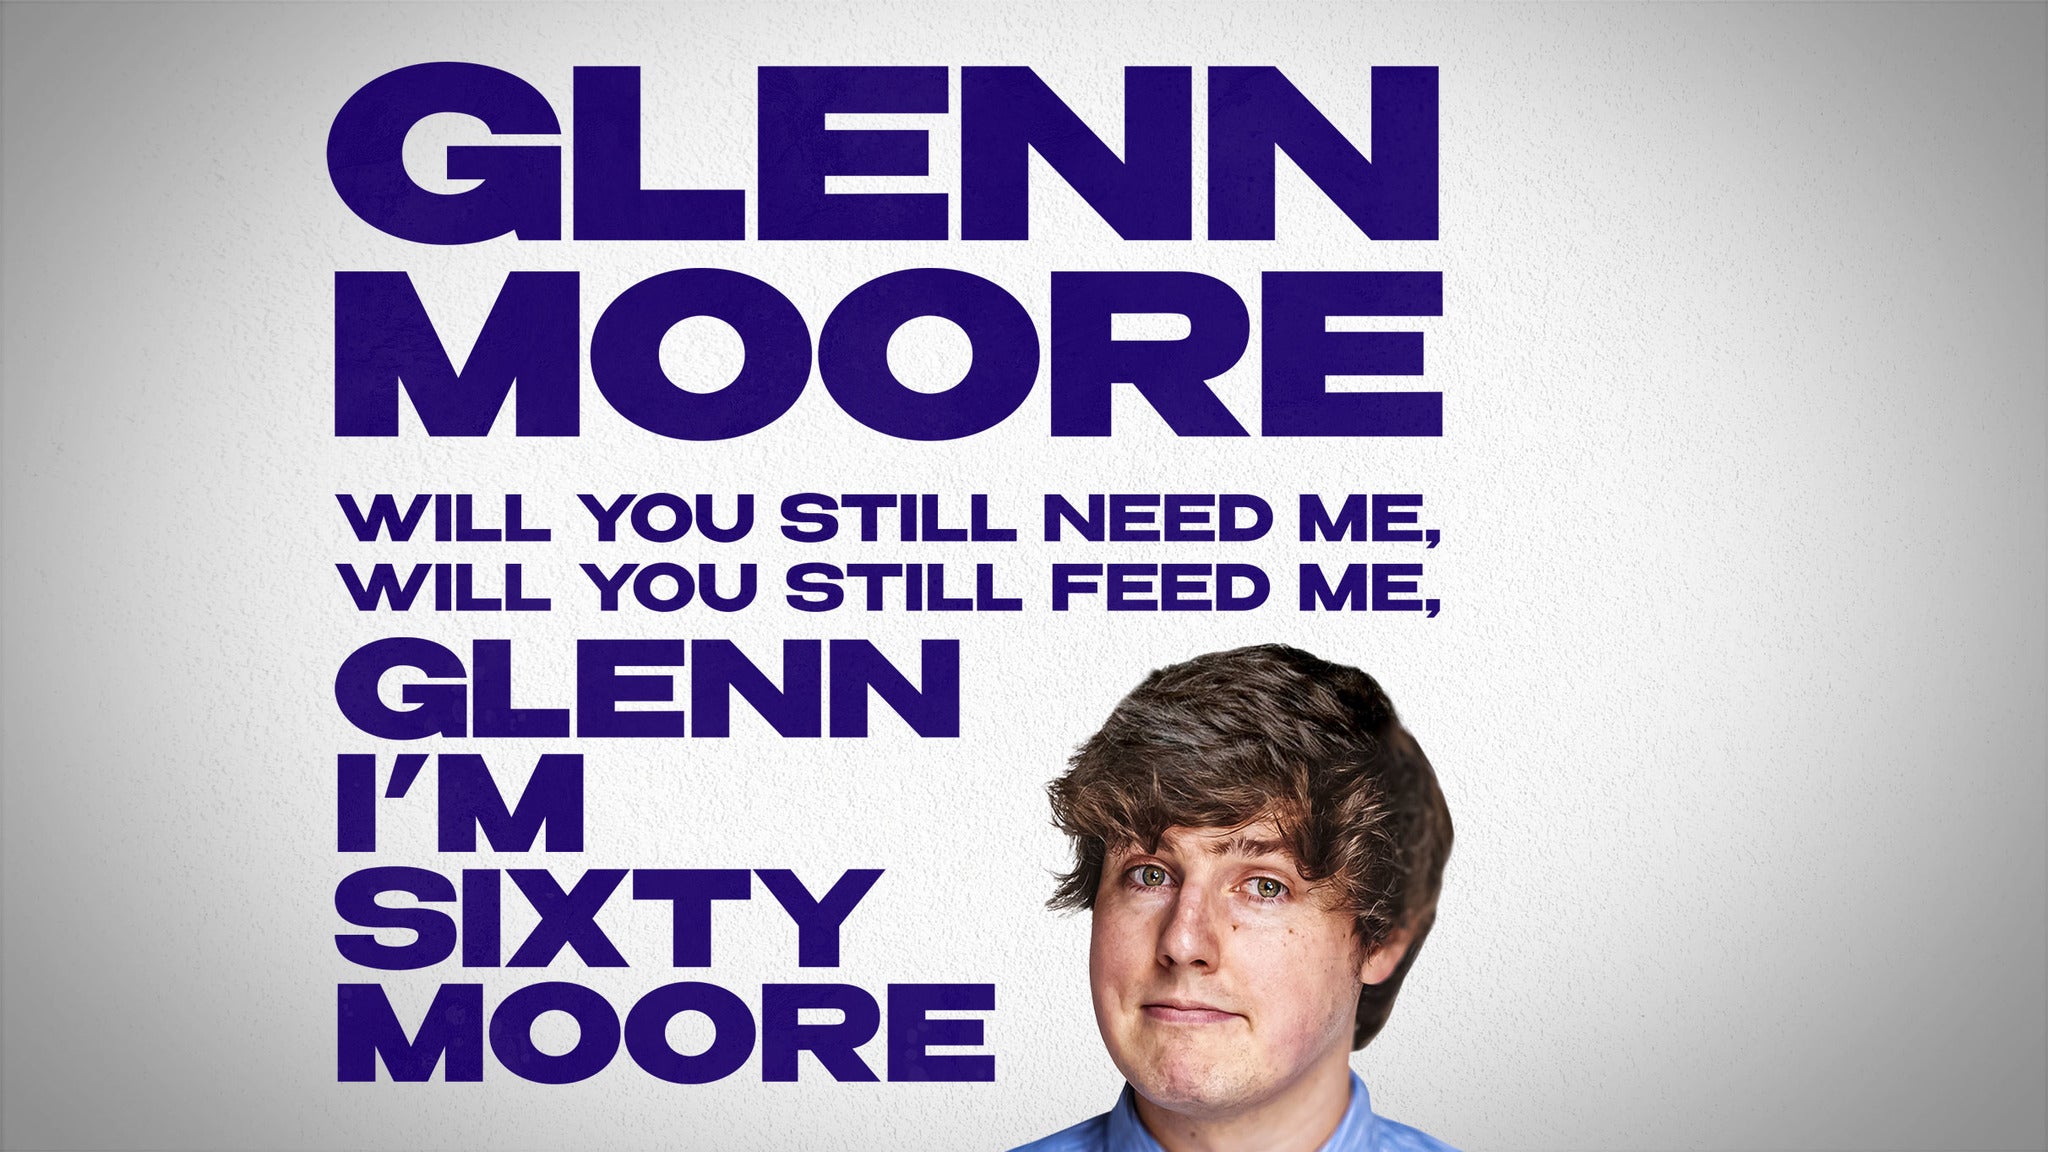 Glenn Moore